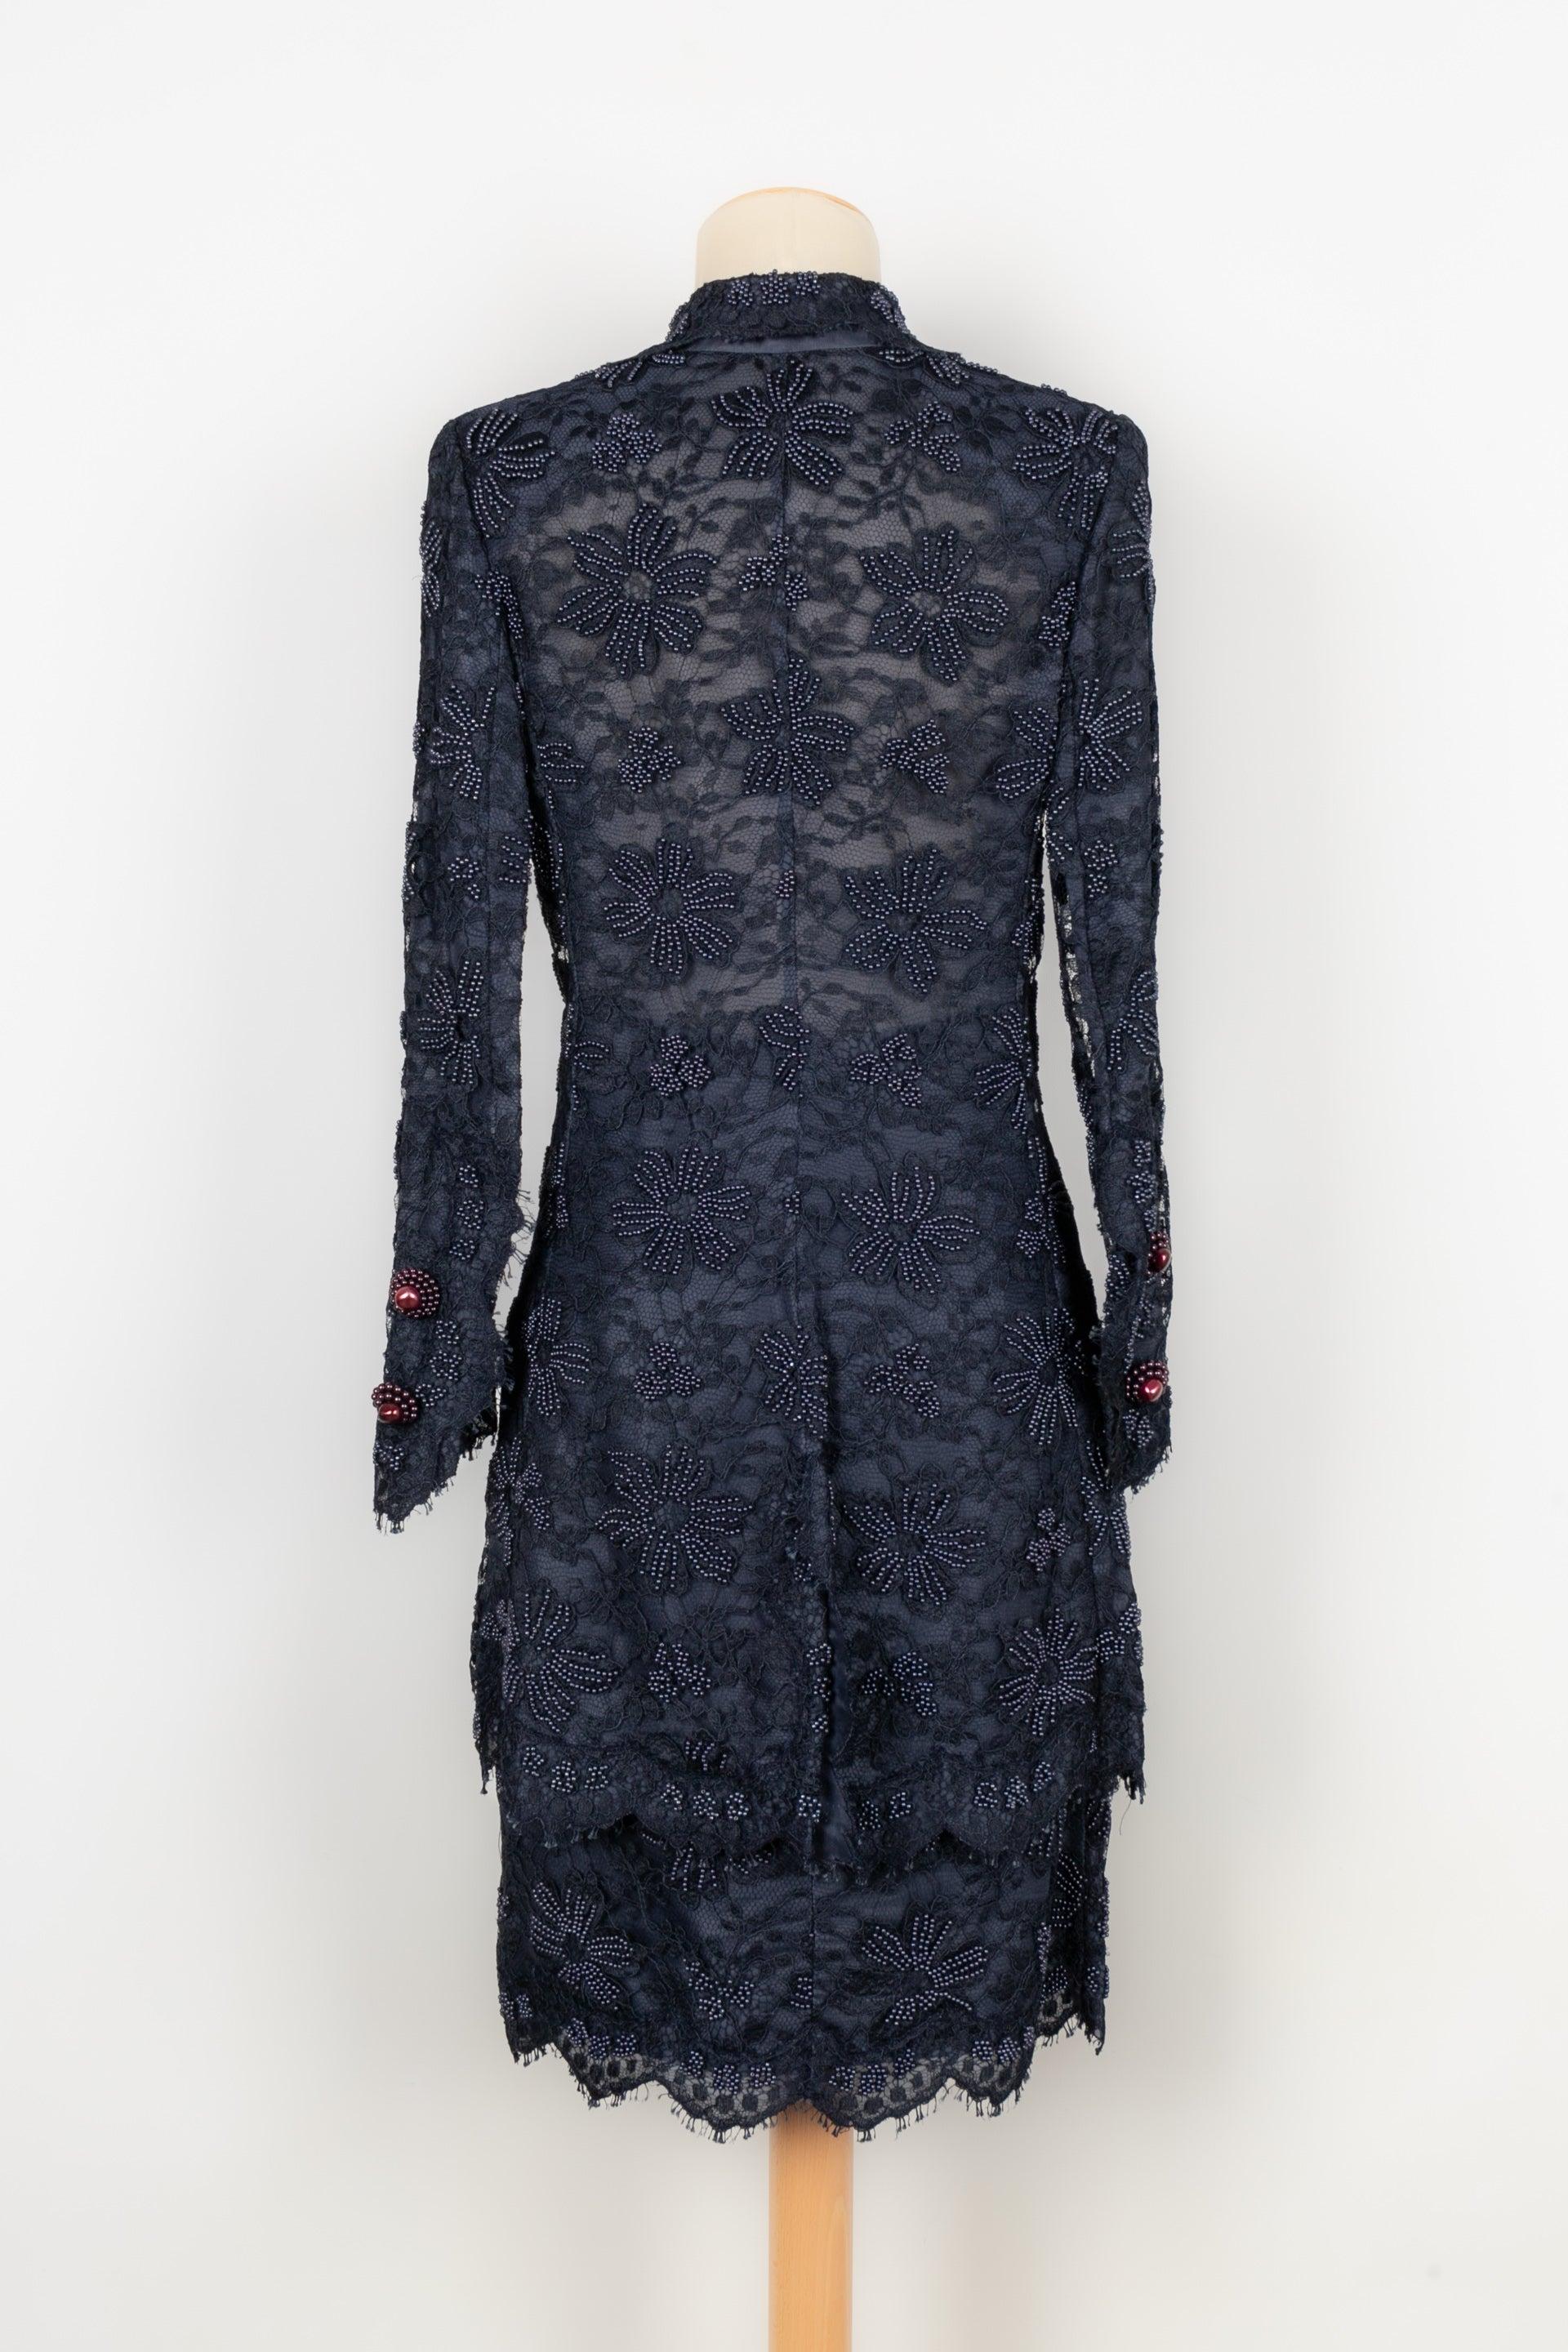 Black Jean-Louis Scherrer Couture Set For Sale